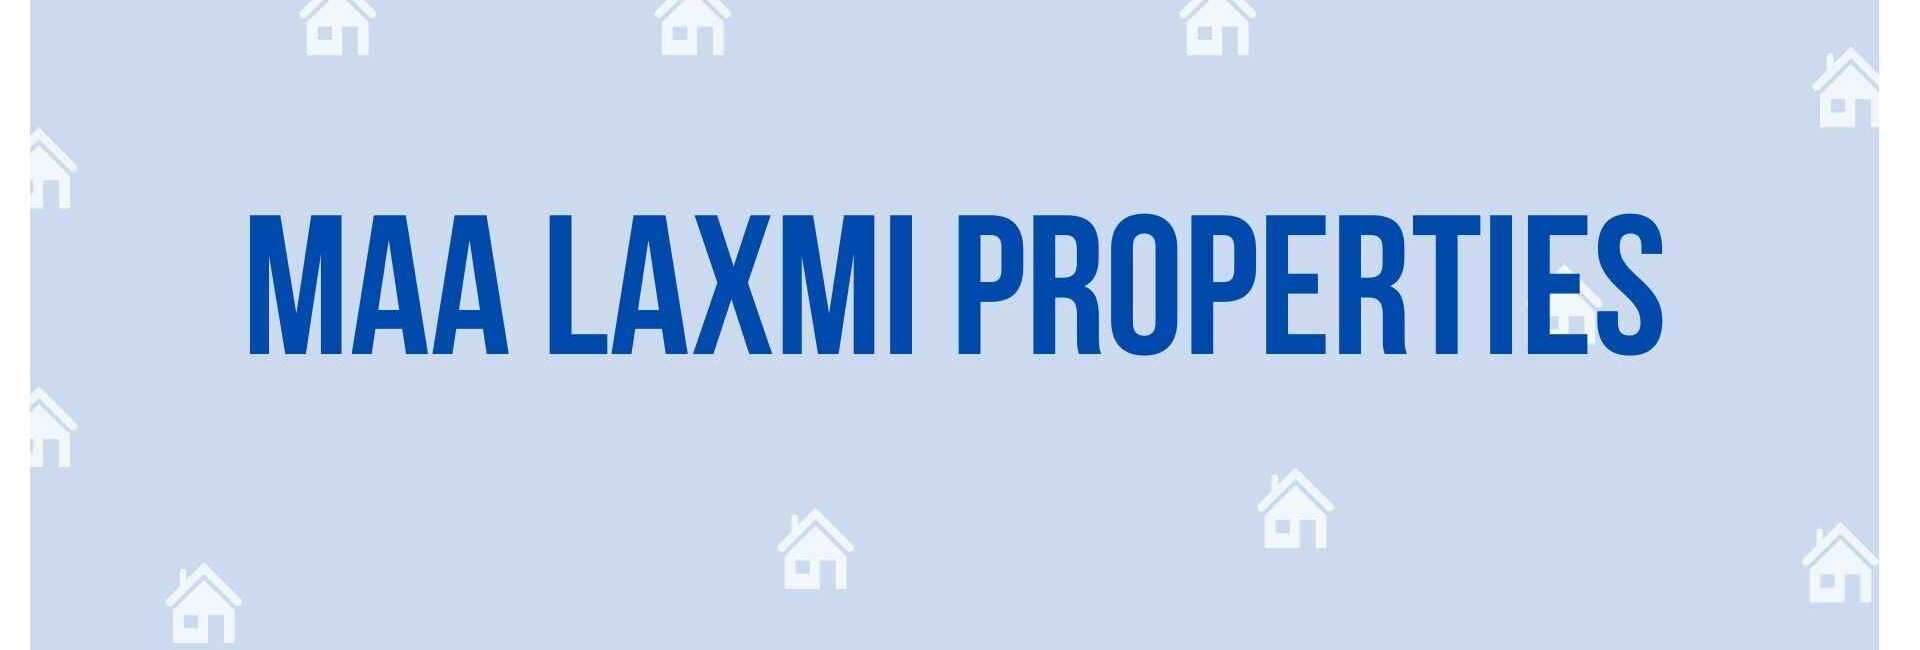 Maa Laxmi Properties - Property Dealer in Noida